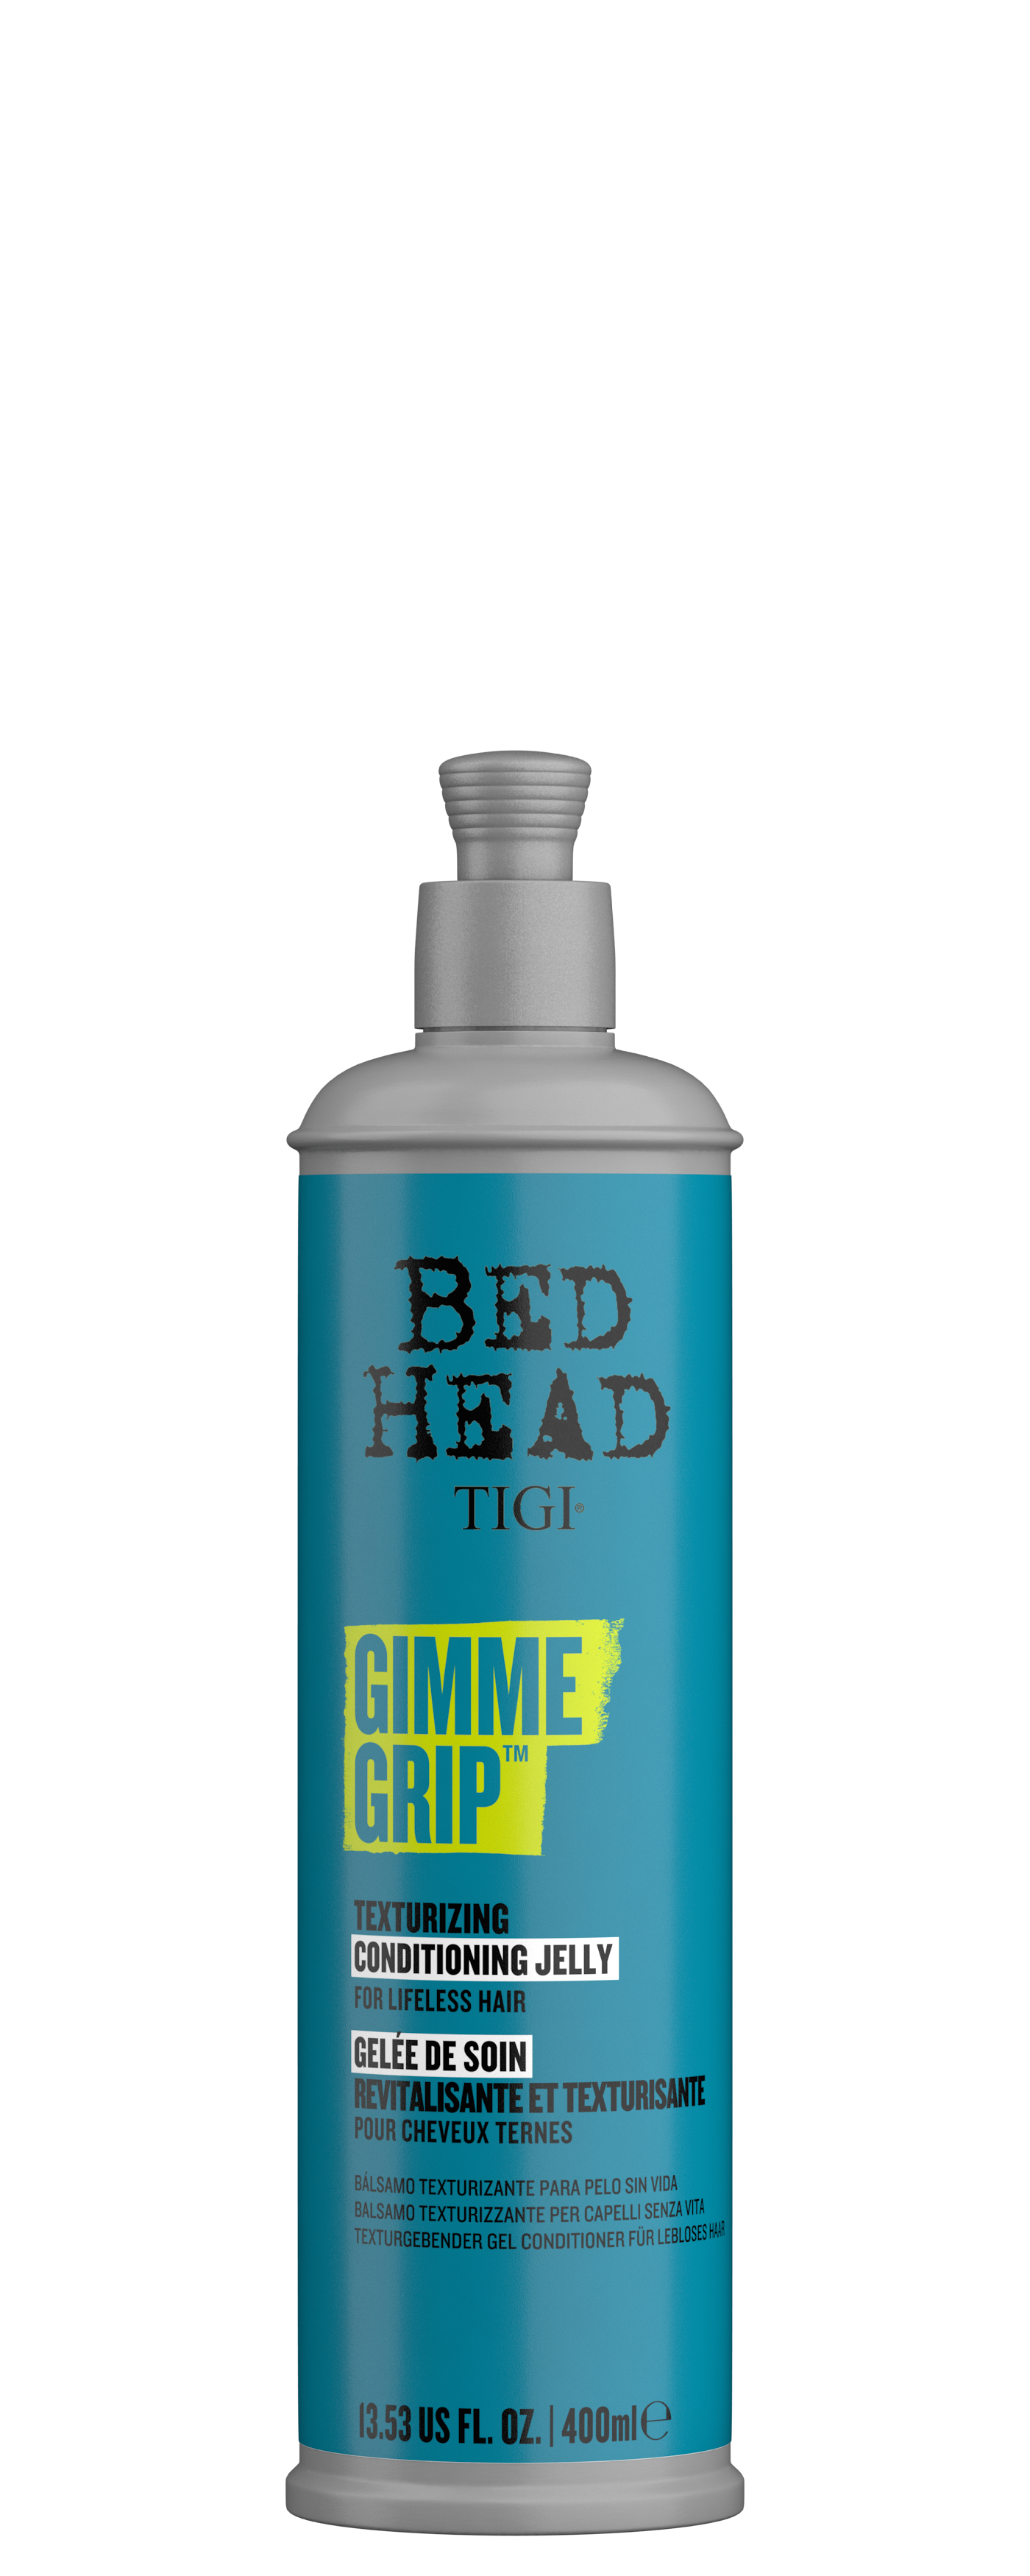 Кондиционеры для волос:  TIGI -  Текстурирующий кондиционер для волос GIMME GRIP BED HEAD (400 мл)